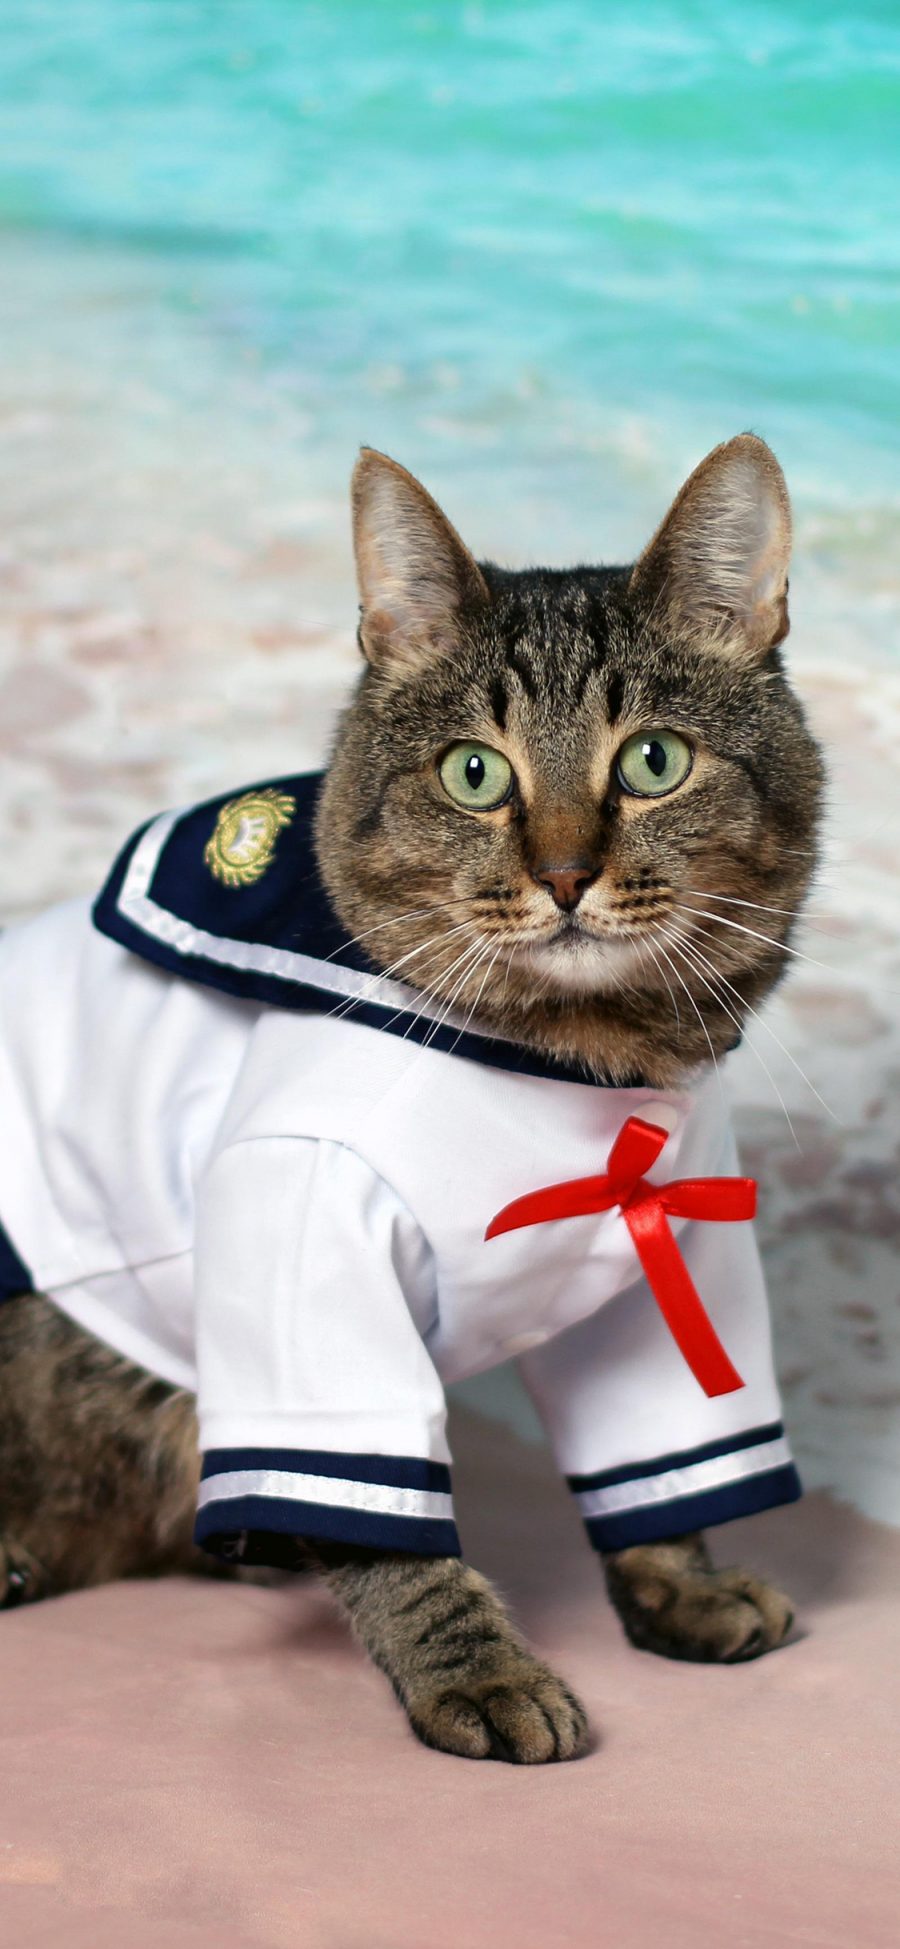 [2436×1125]猫咪 喵星人 水手服 可爱 萌 宠物 苹果手机壁纸图片